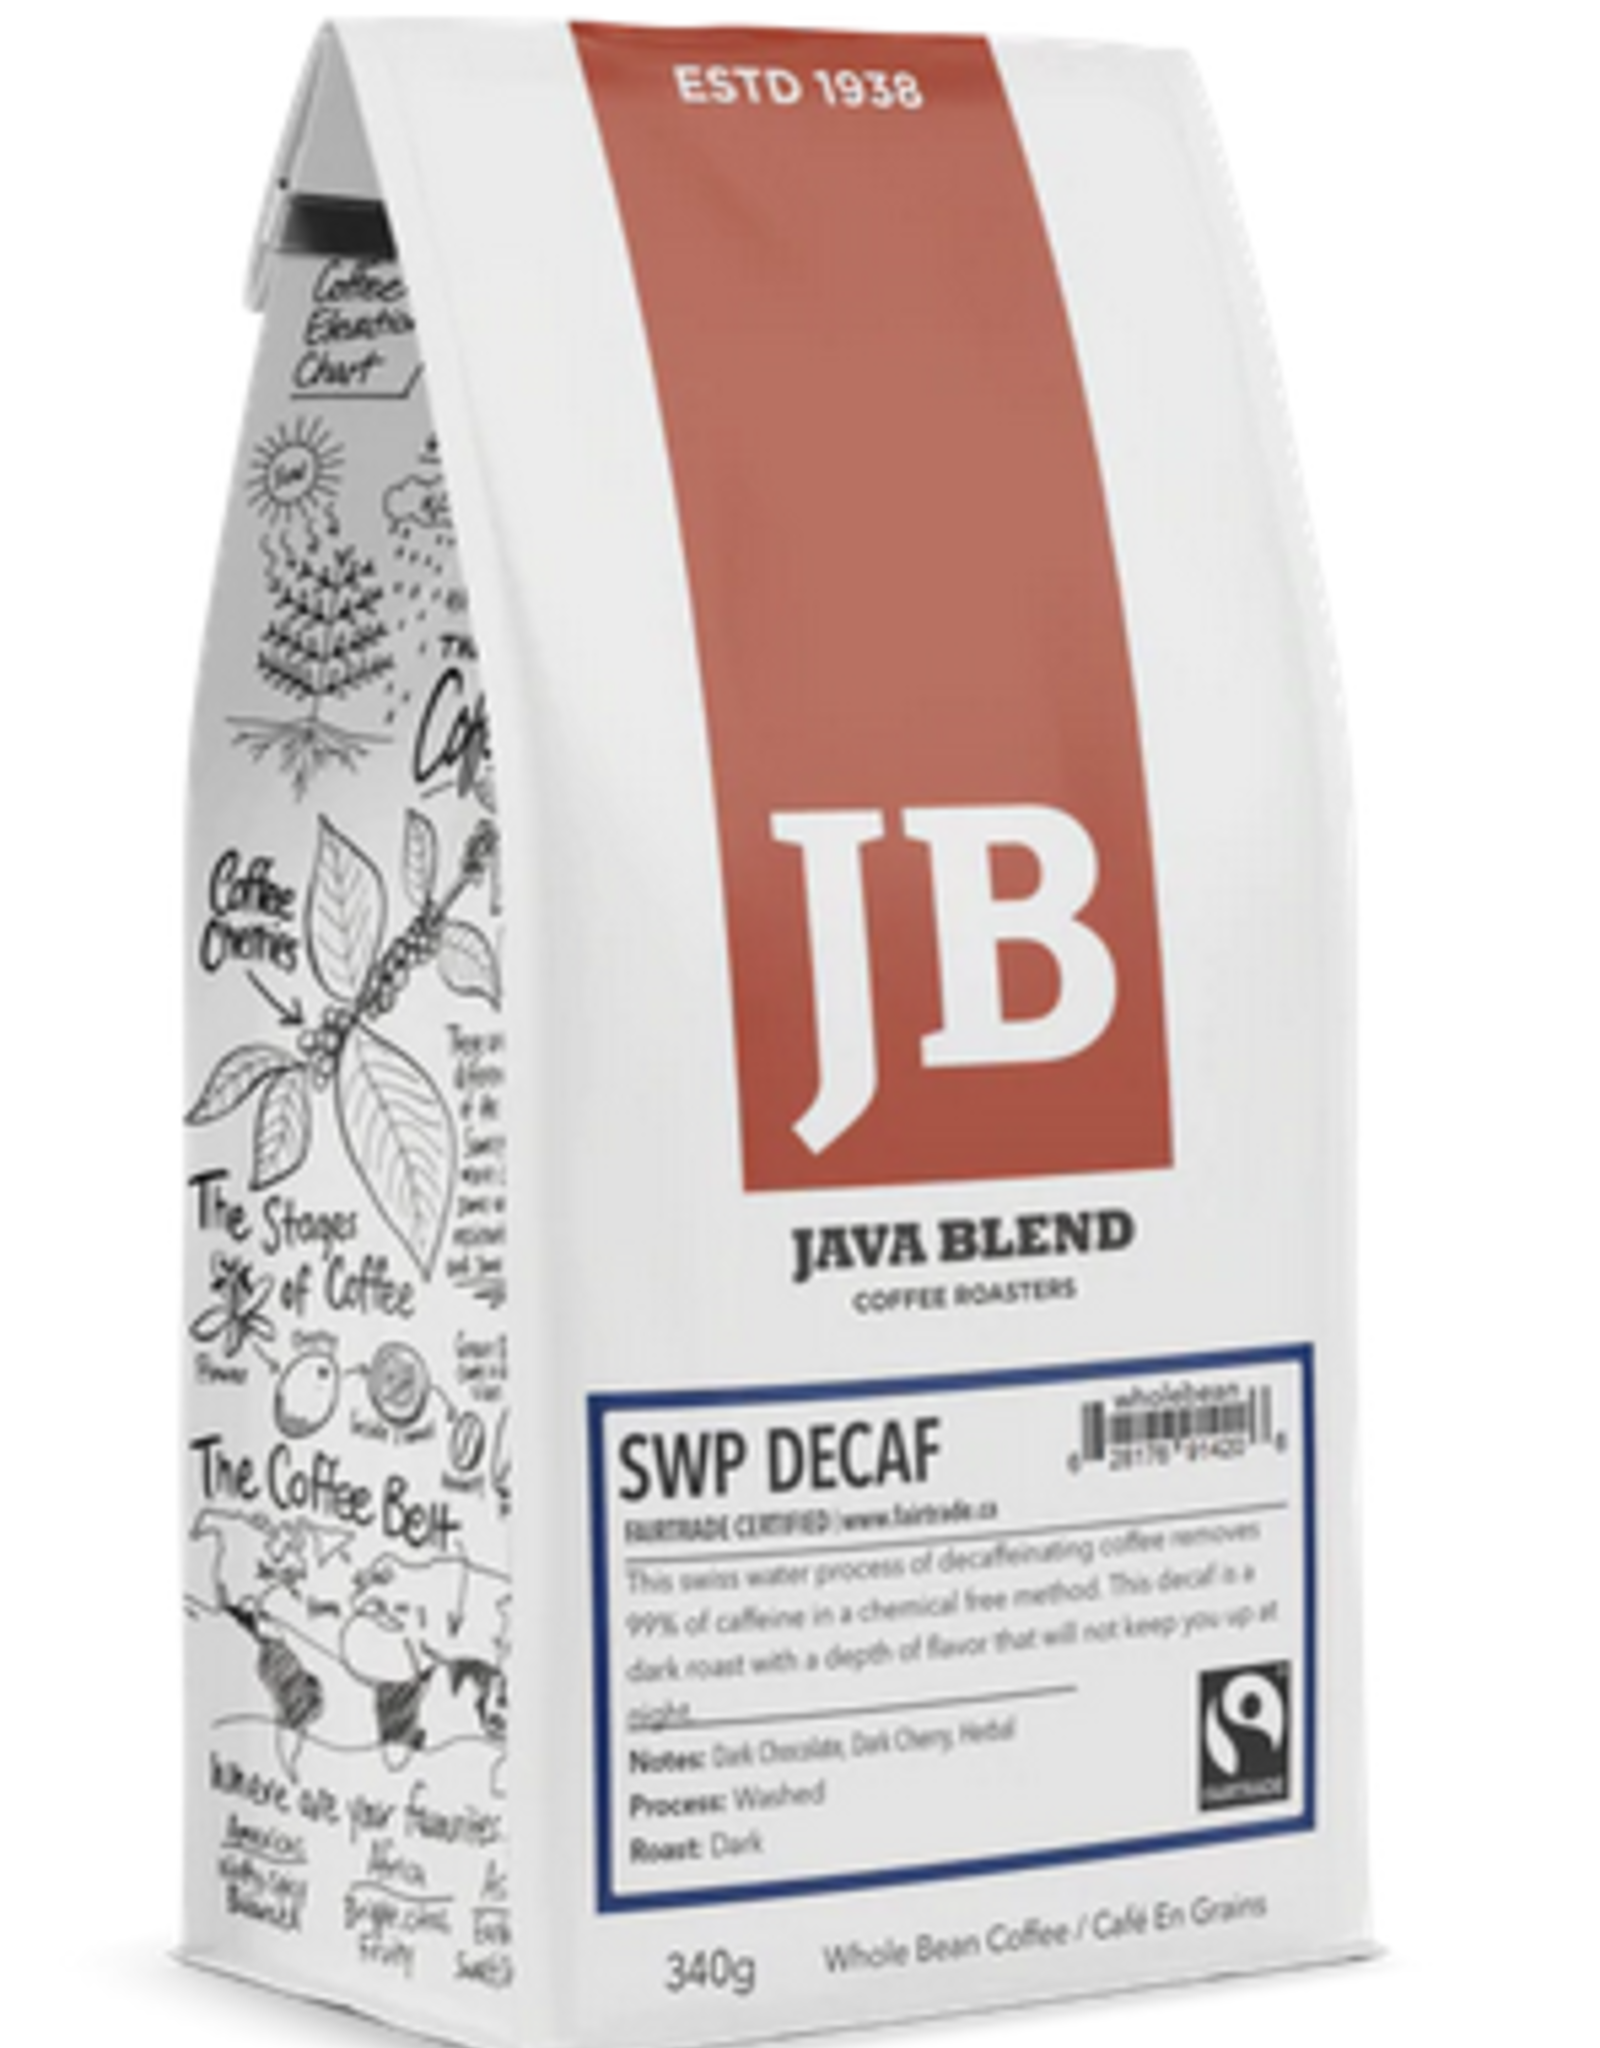 Java Blend Java Blend Coffee -SWP Decaf (340g)